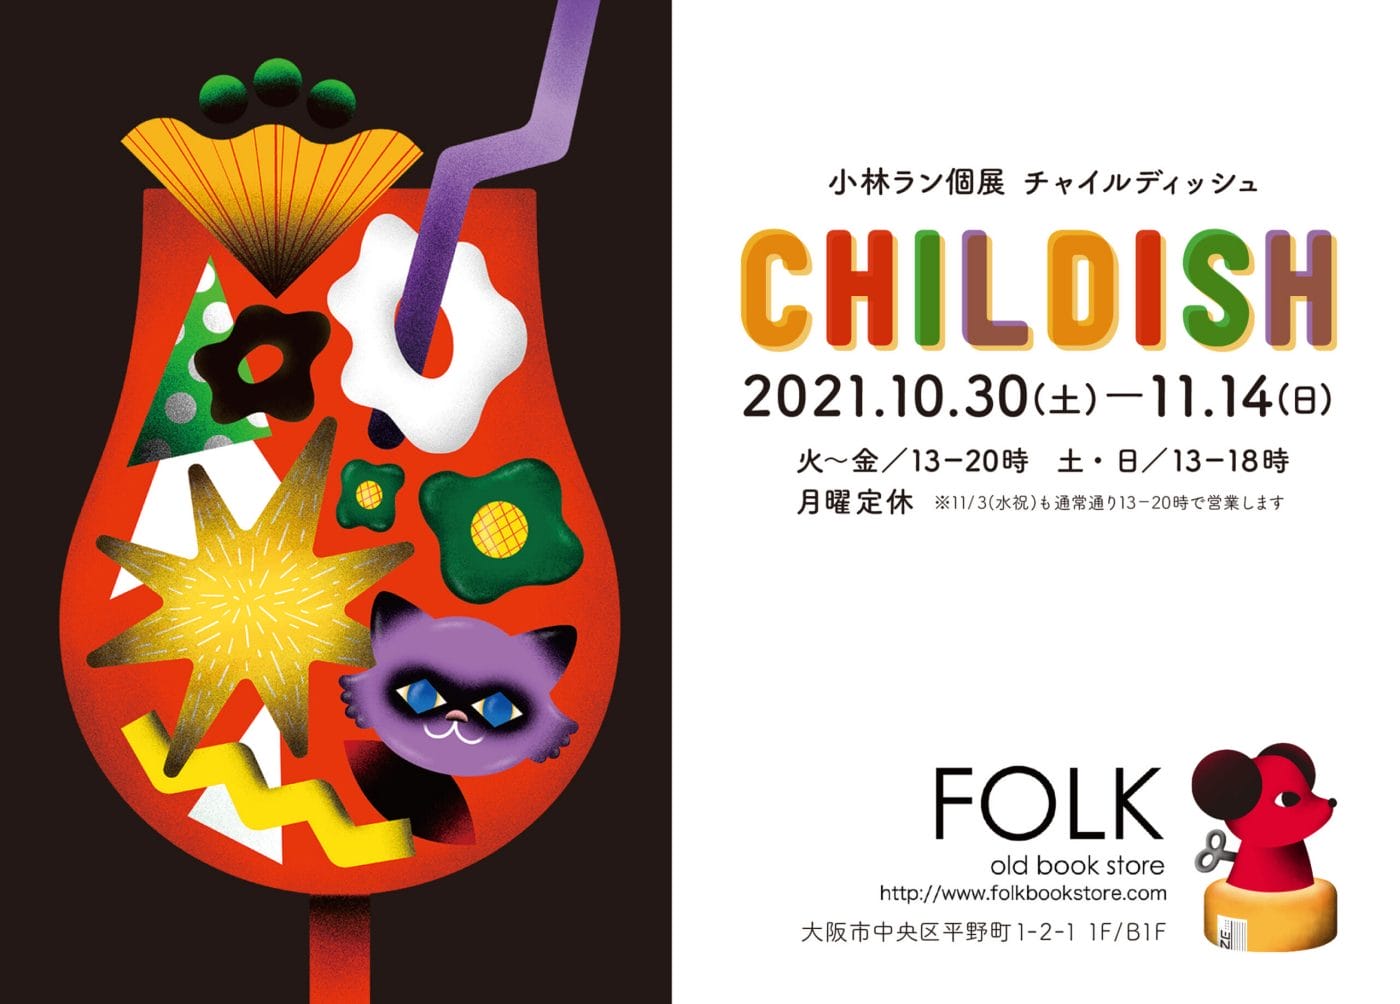 FOLK old book storeにて、イラストレーター・小林ランの個展 「CHILDISH」開催。「大人が持つ子供っぽい心」をテーマにジークレーやアナログ作品が並ぶ。